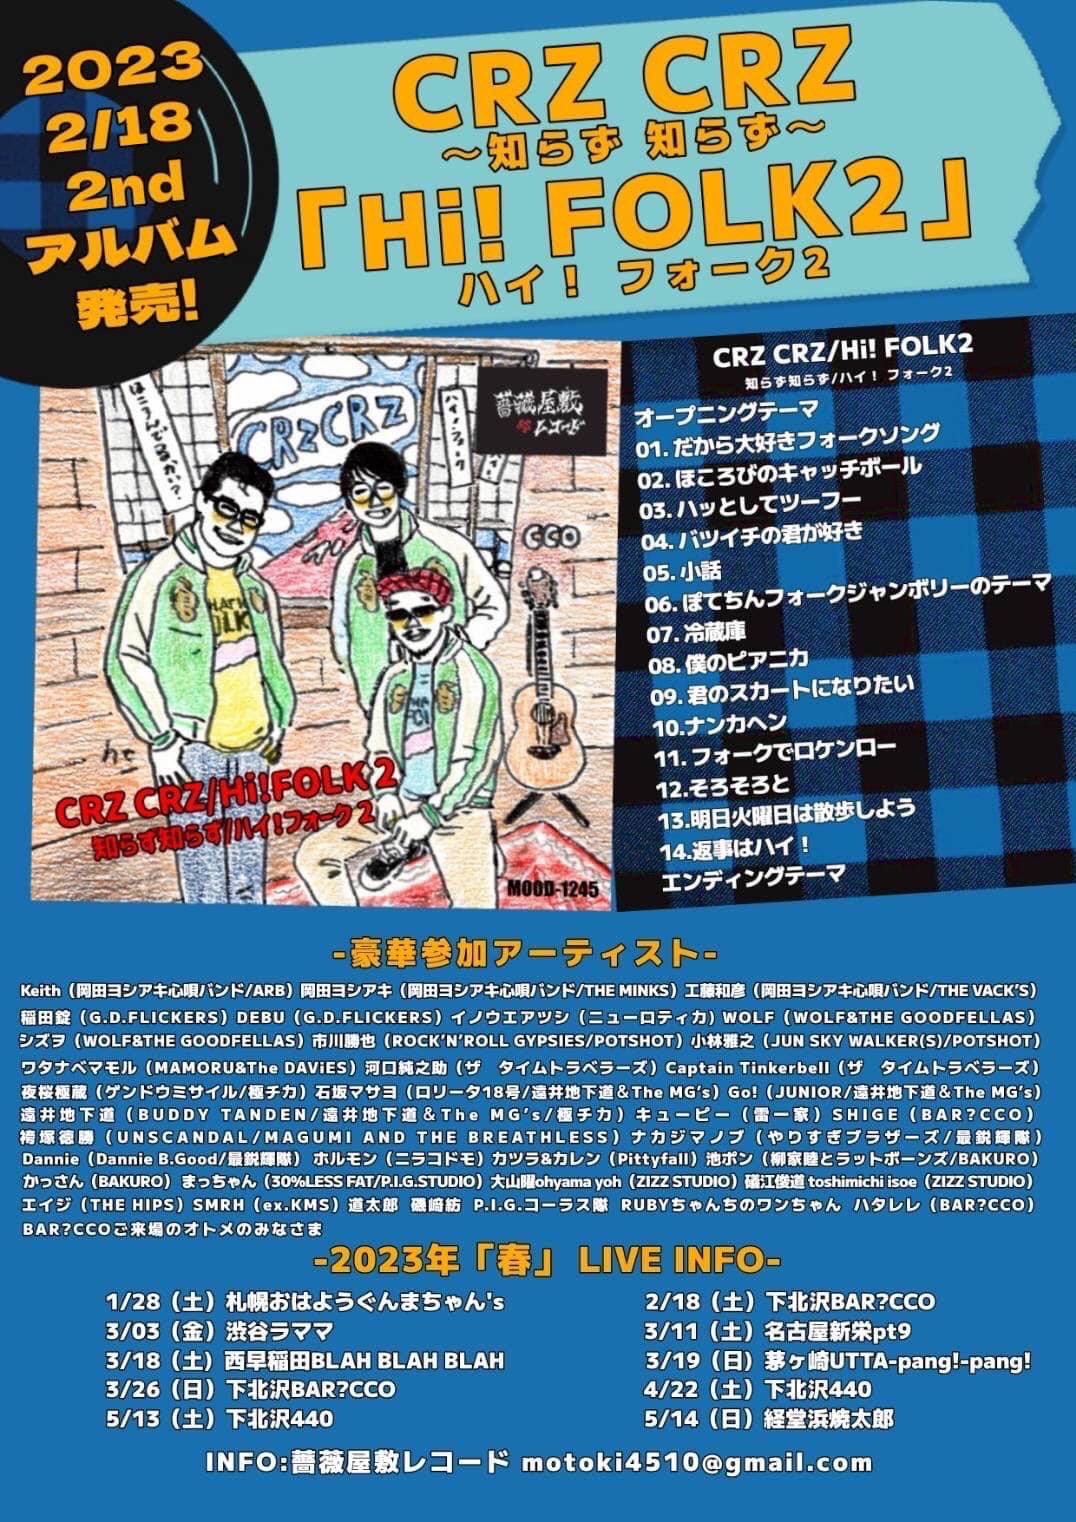 CRZ CRZ、豪華メンバーが参加した2ndアルバム『Hi! FOLK2』リリース 